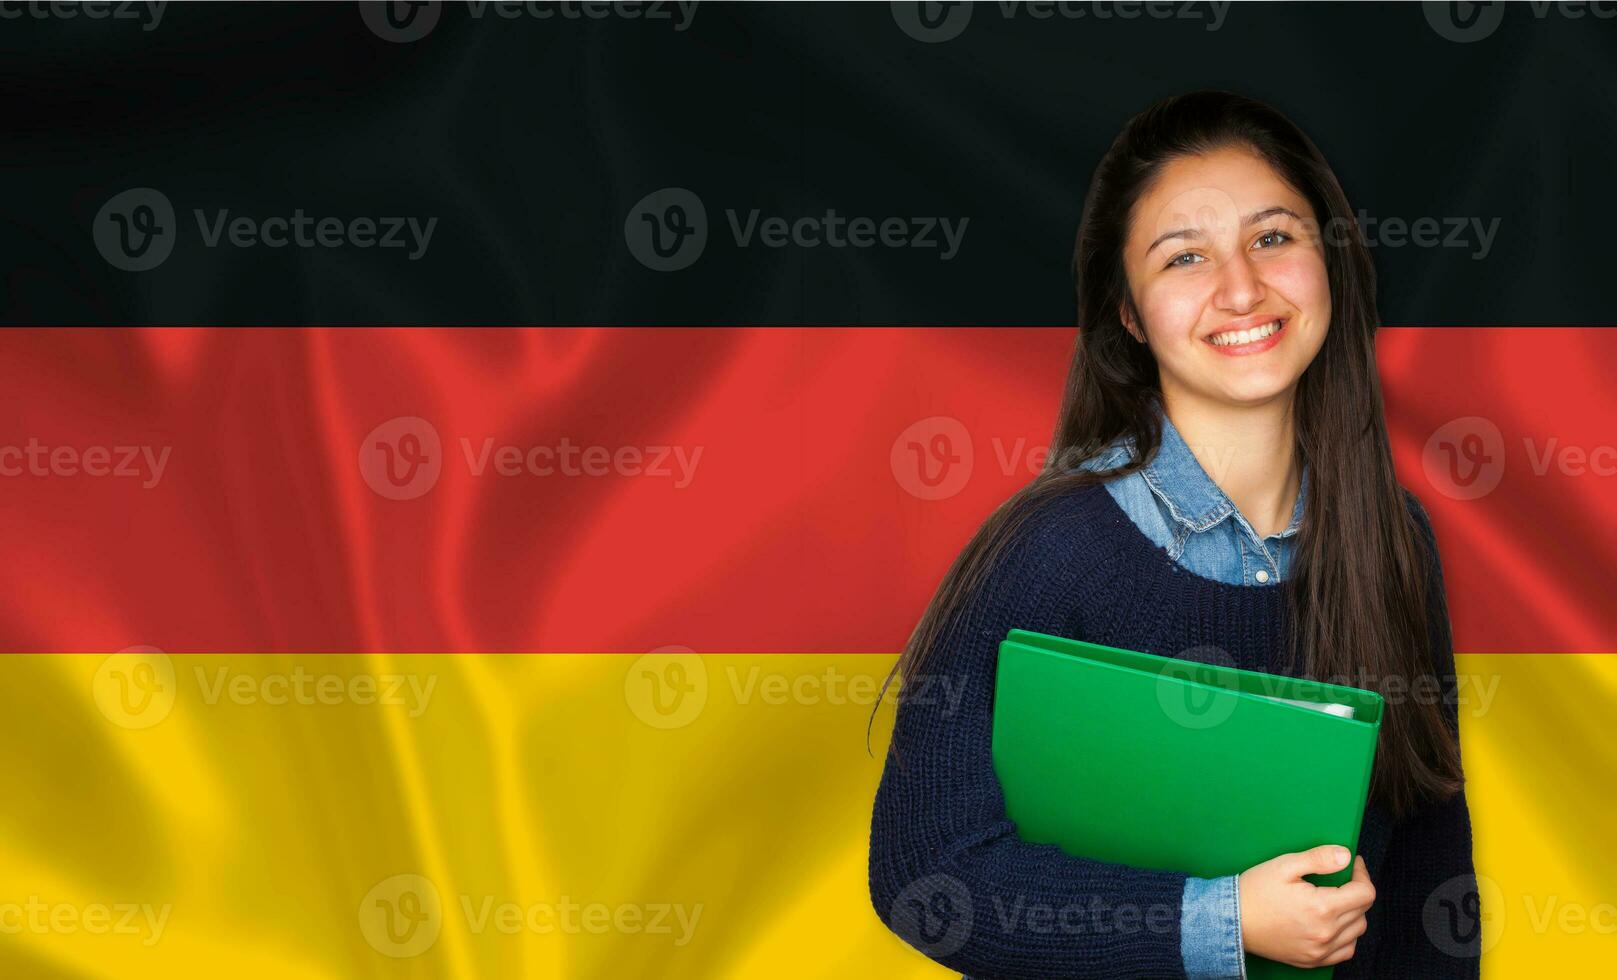 adolescente estudiante sonriente terminado alemán bandera foto